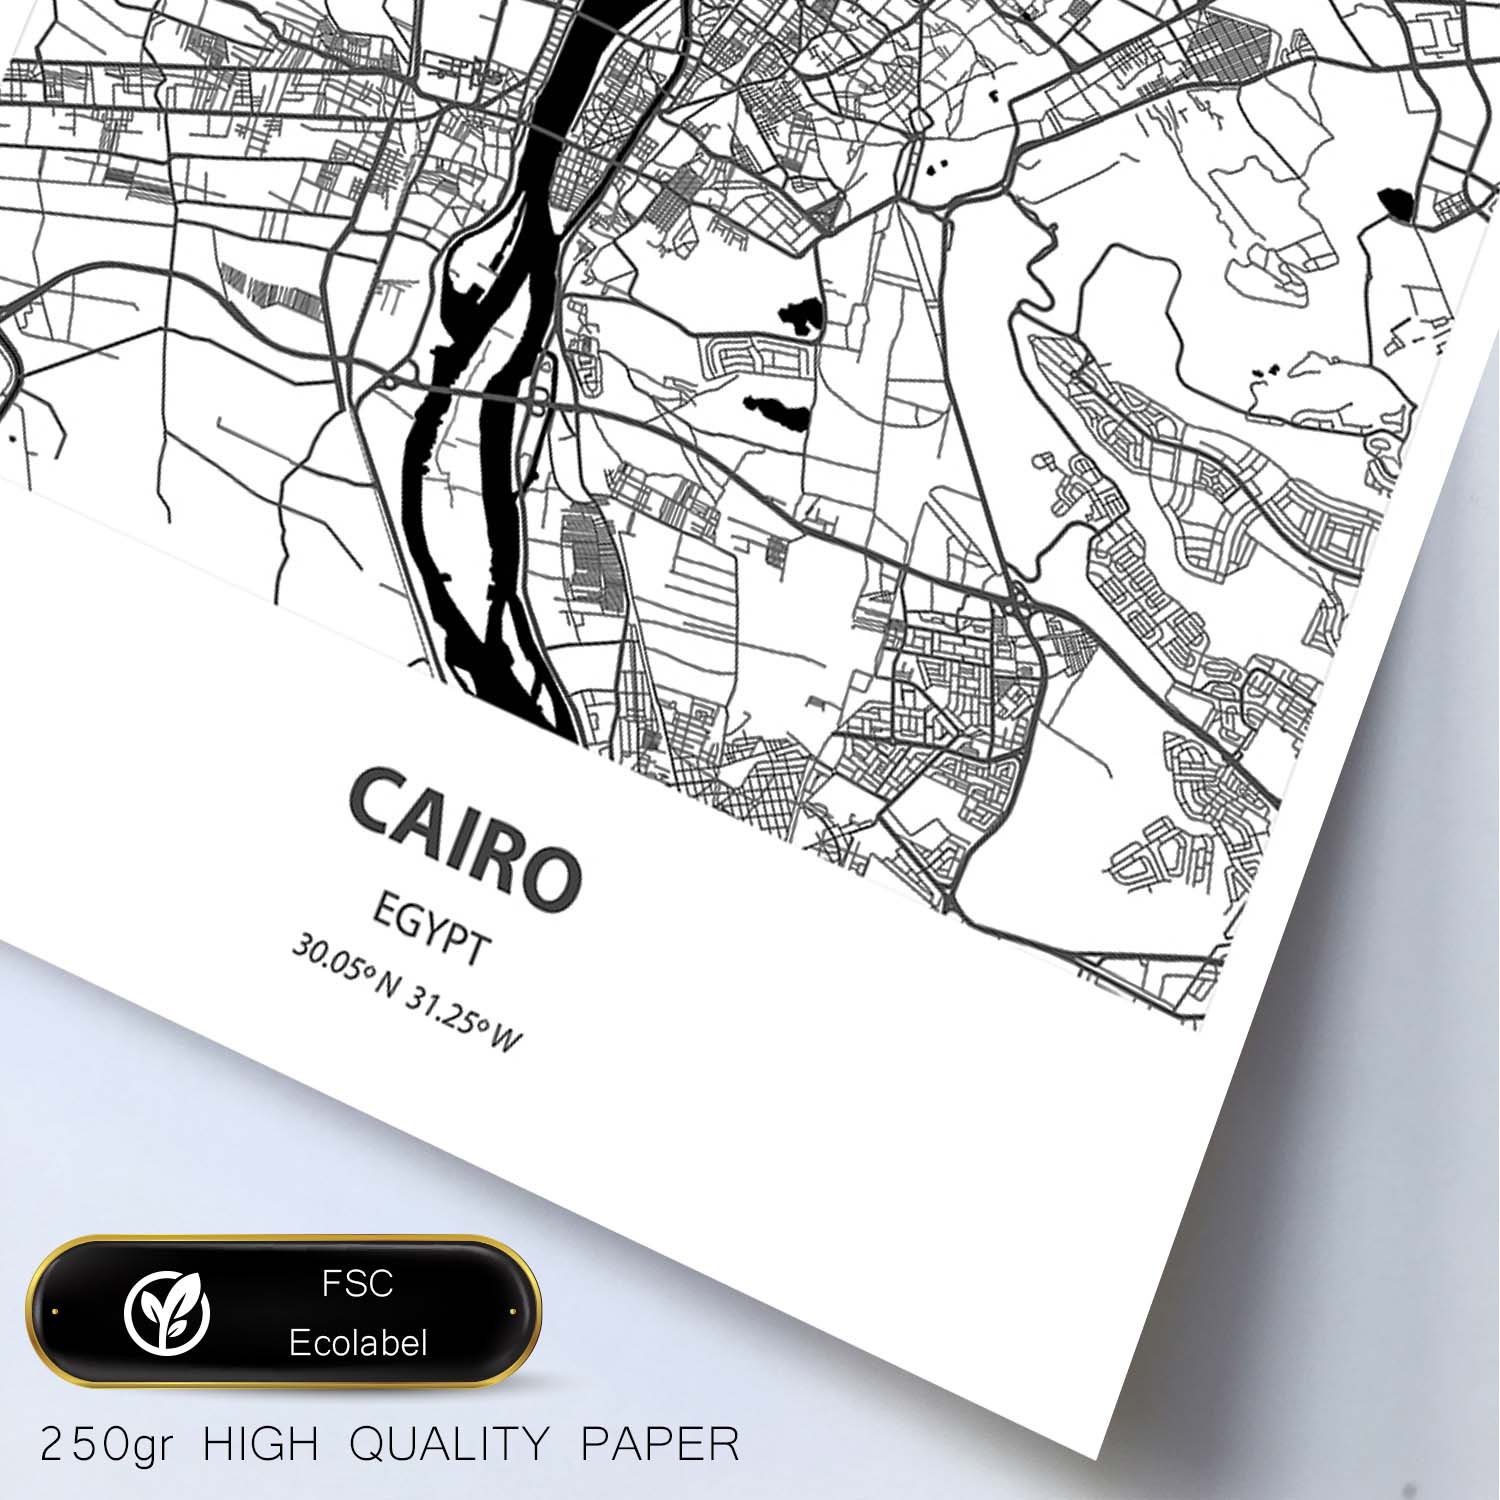 Poster con mapa de Cairo - Egipto. Láminas de ciudades de África con mares y ríos en color negro.-Artwork-Nacnic-Nacnic Estudio SL